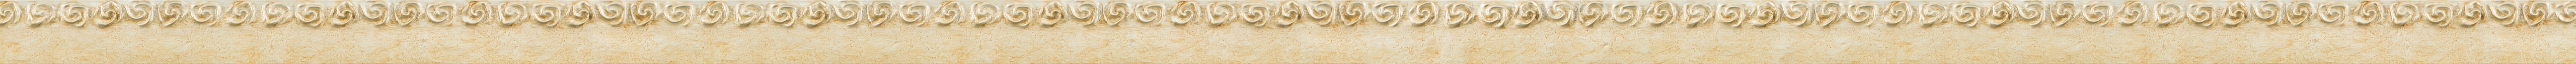 Μοντέρνα κορνίζα με φύλλο ασήμι frame